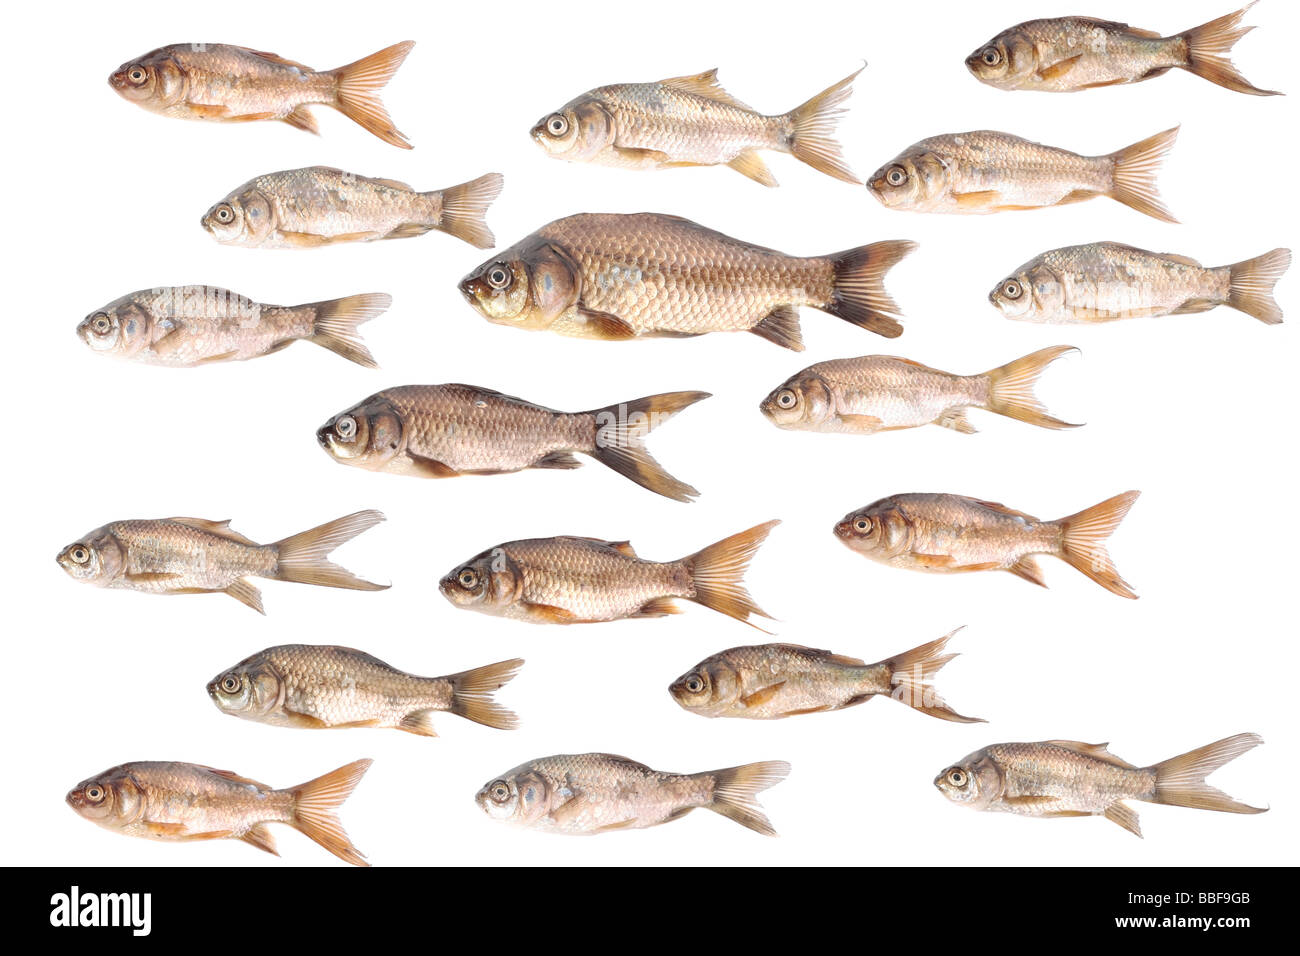 Many carp fish fish isolated over white background Stock Photo